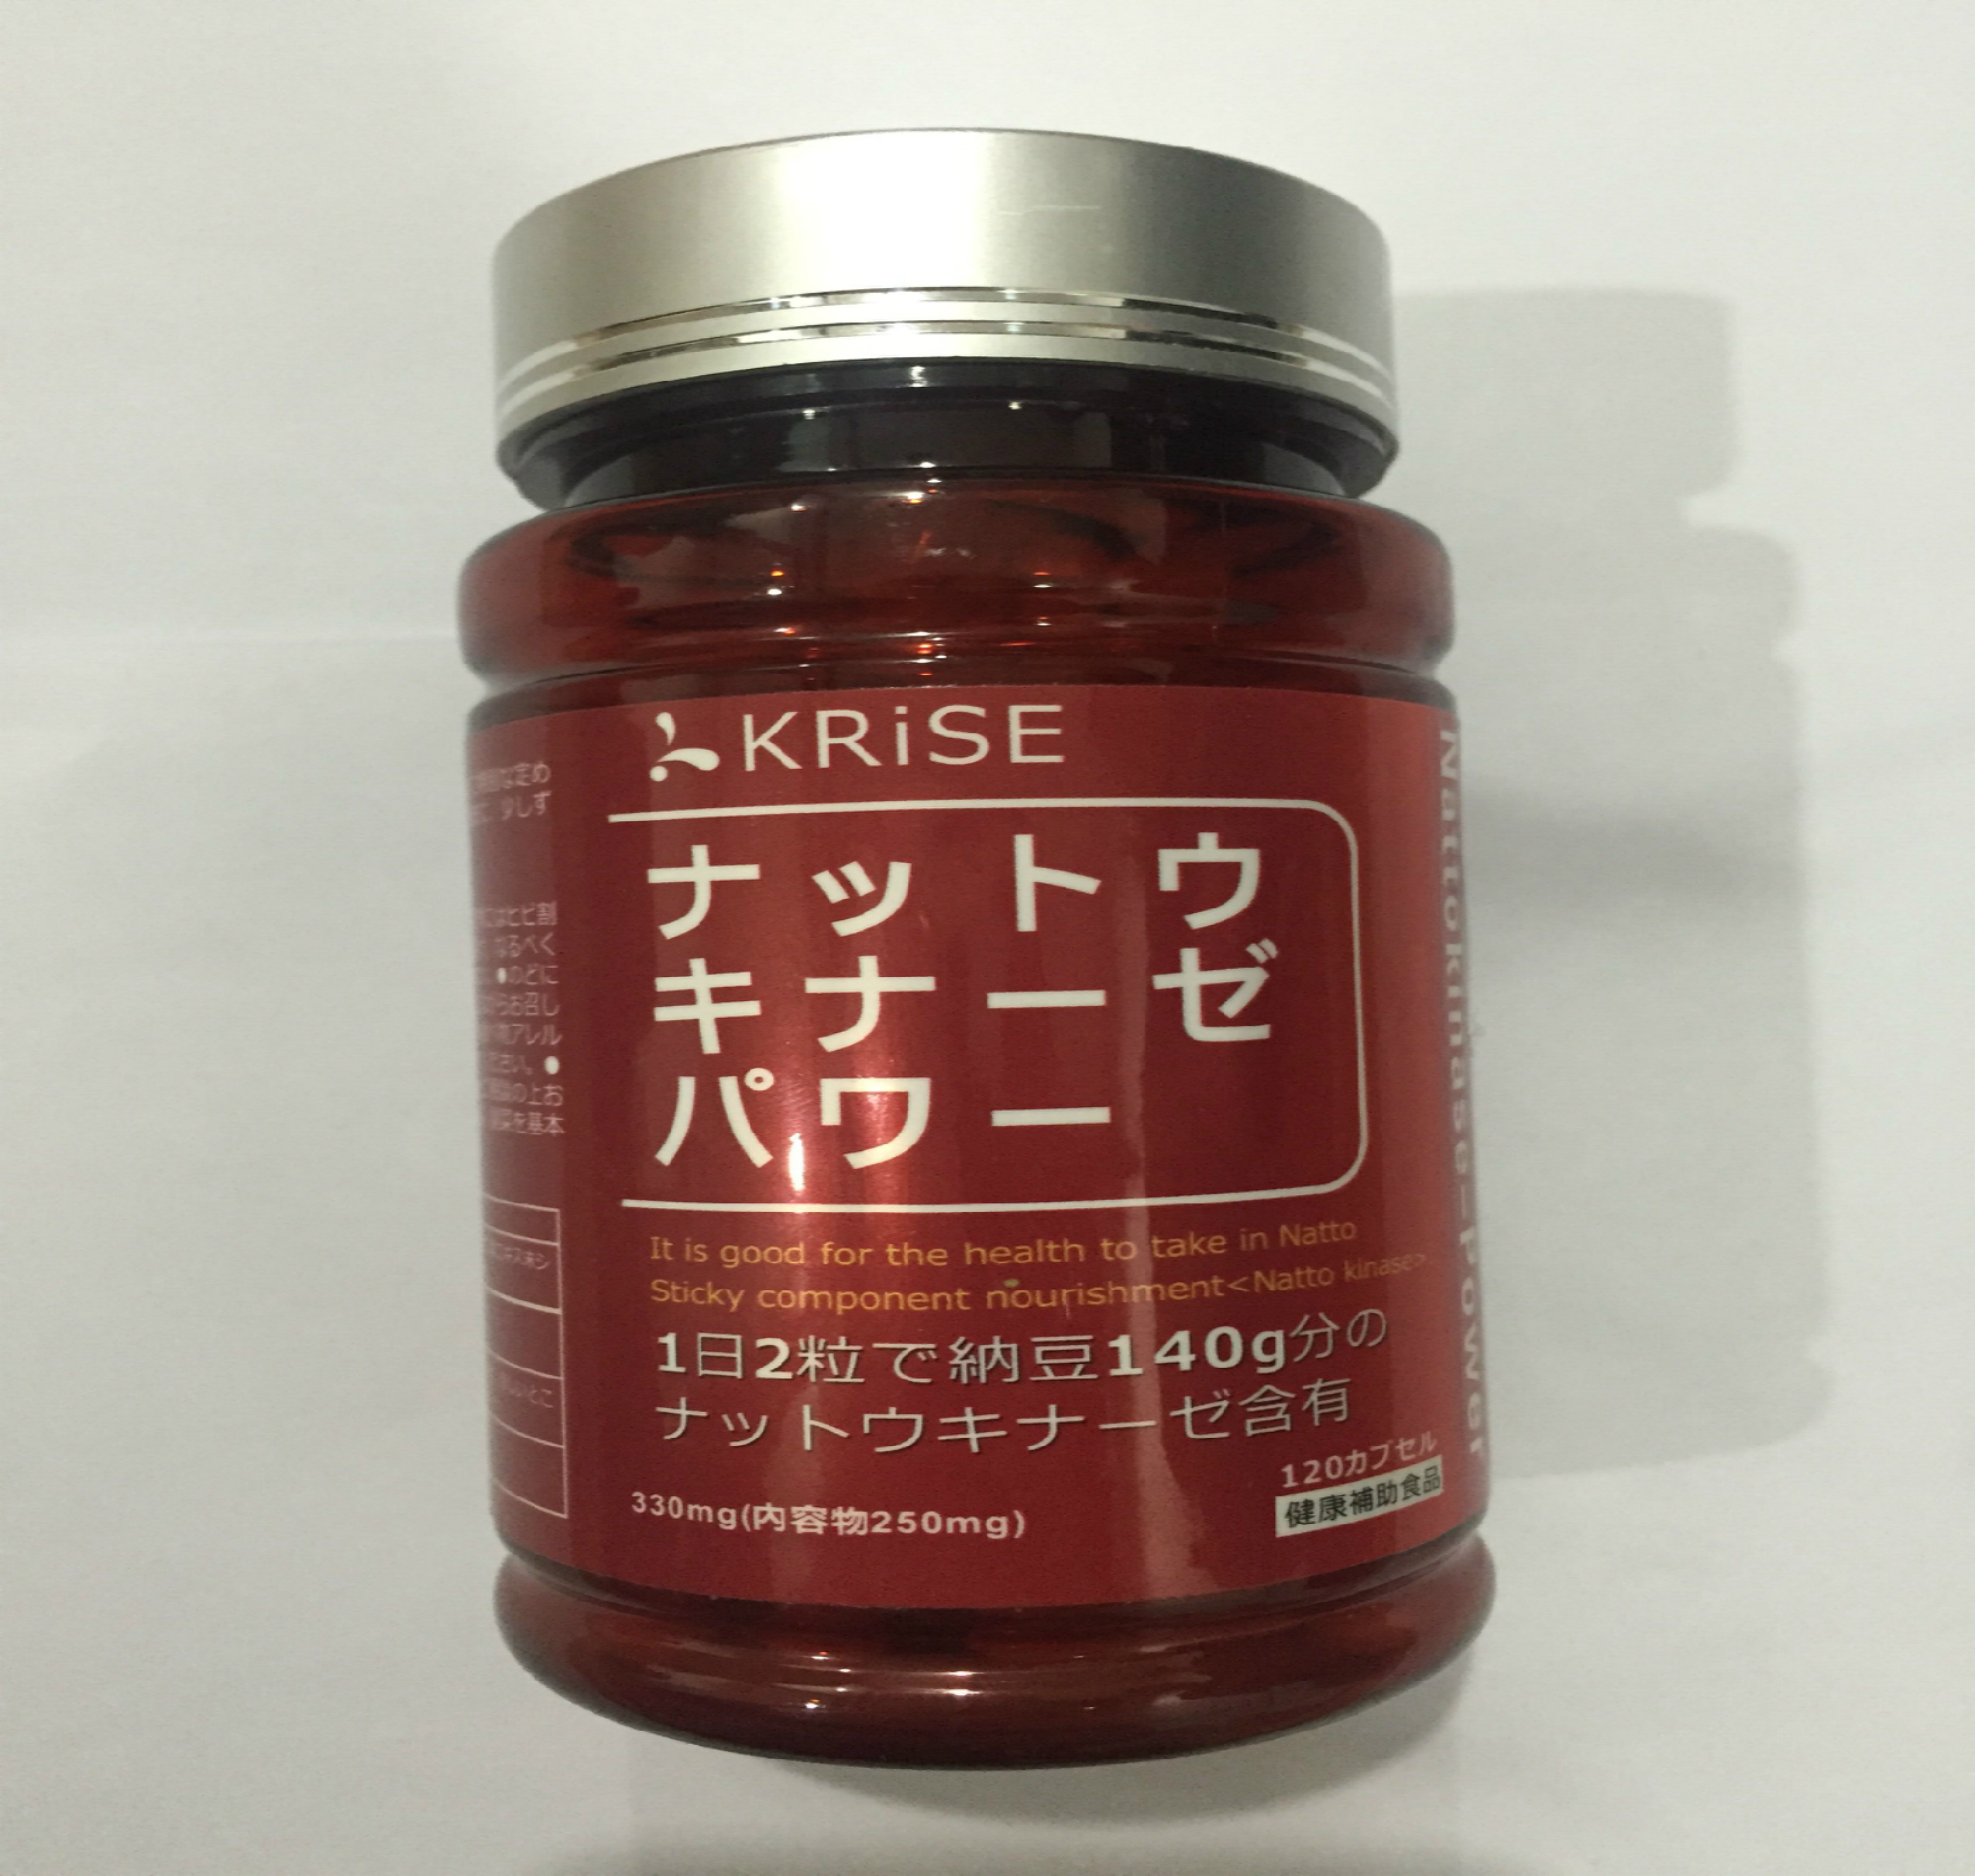 日本高端原装进口纳豆激酶软胶囊 中老年辅助健康食品优惠买3送1